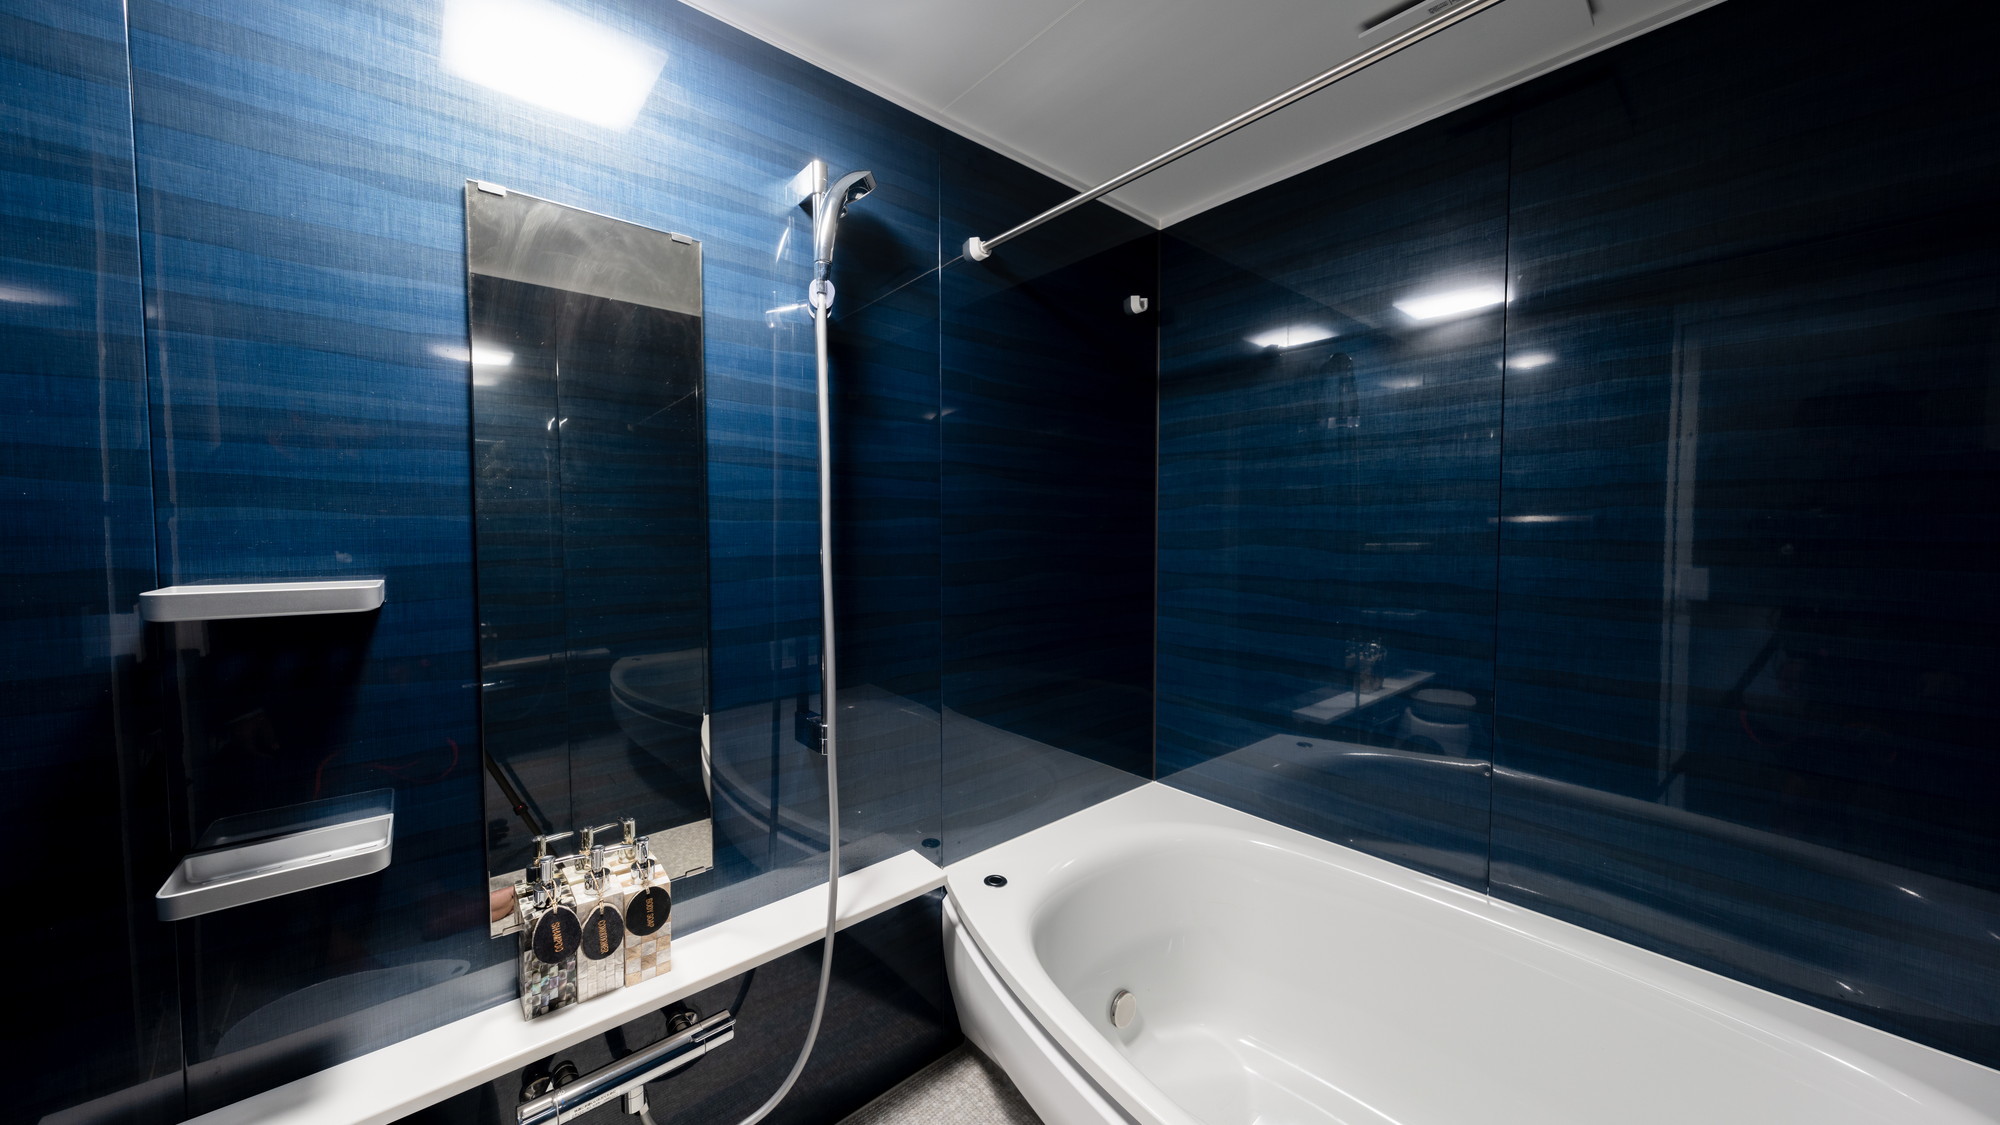 【共通】1.25坪の広いバスルームには手足を伸ばせるワイド浴槽を採用。